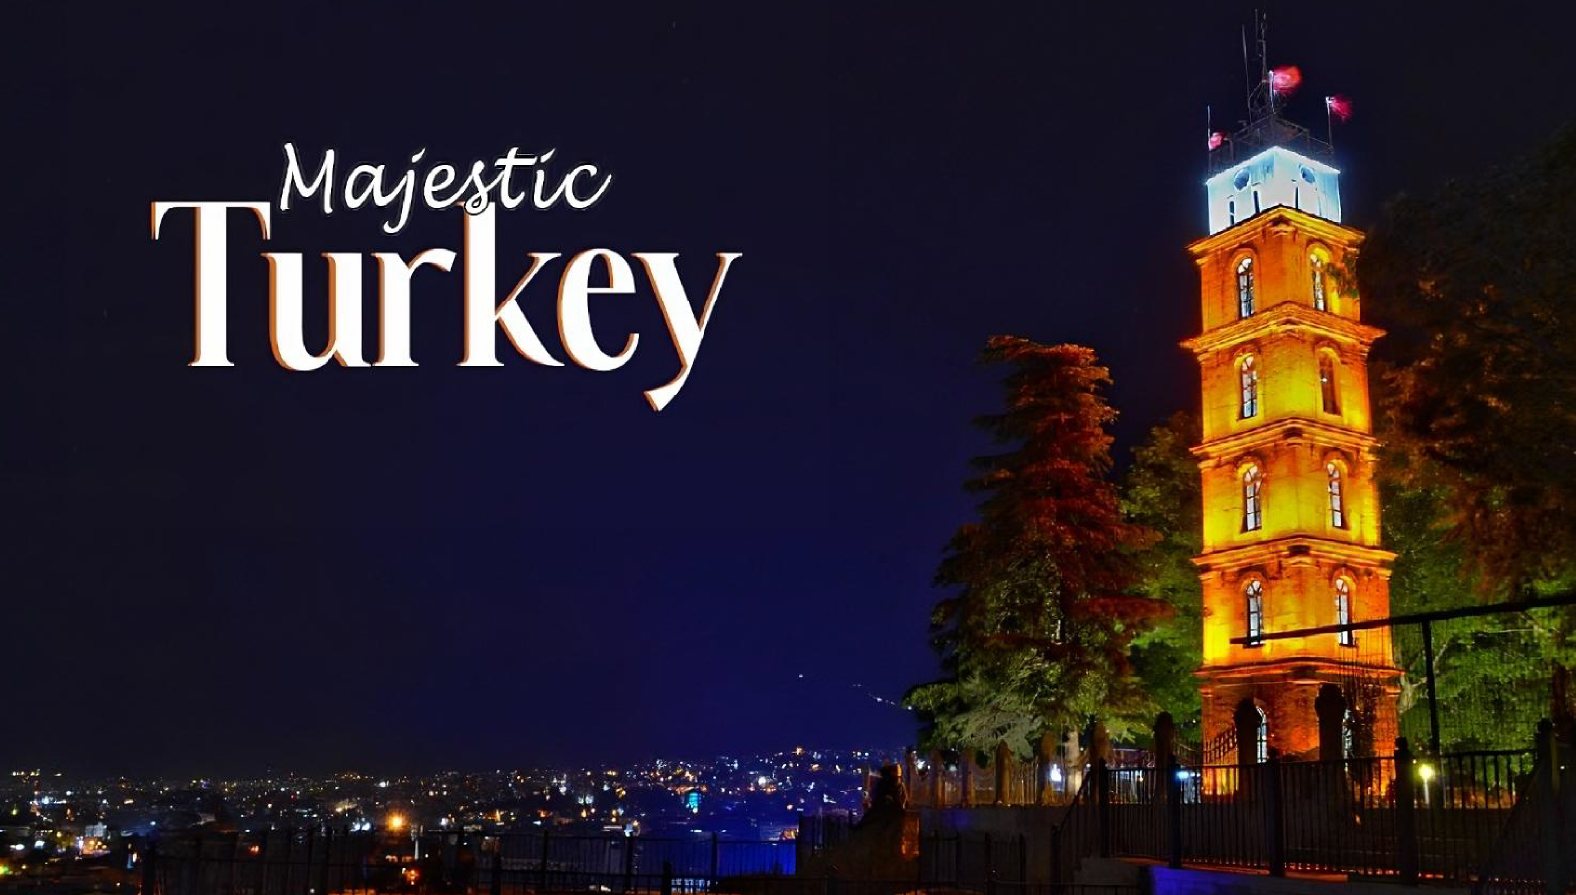 Majestic - Turkey